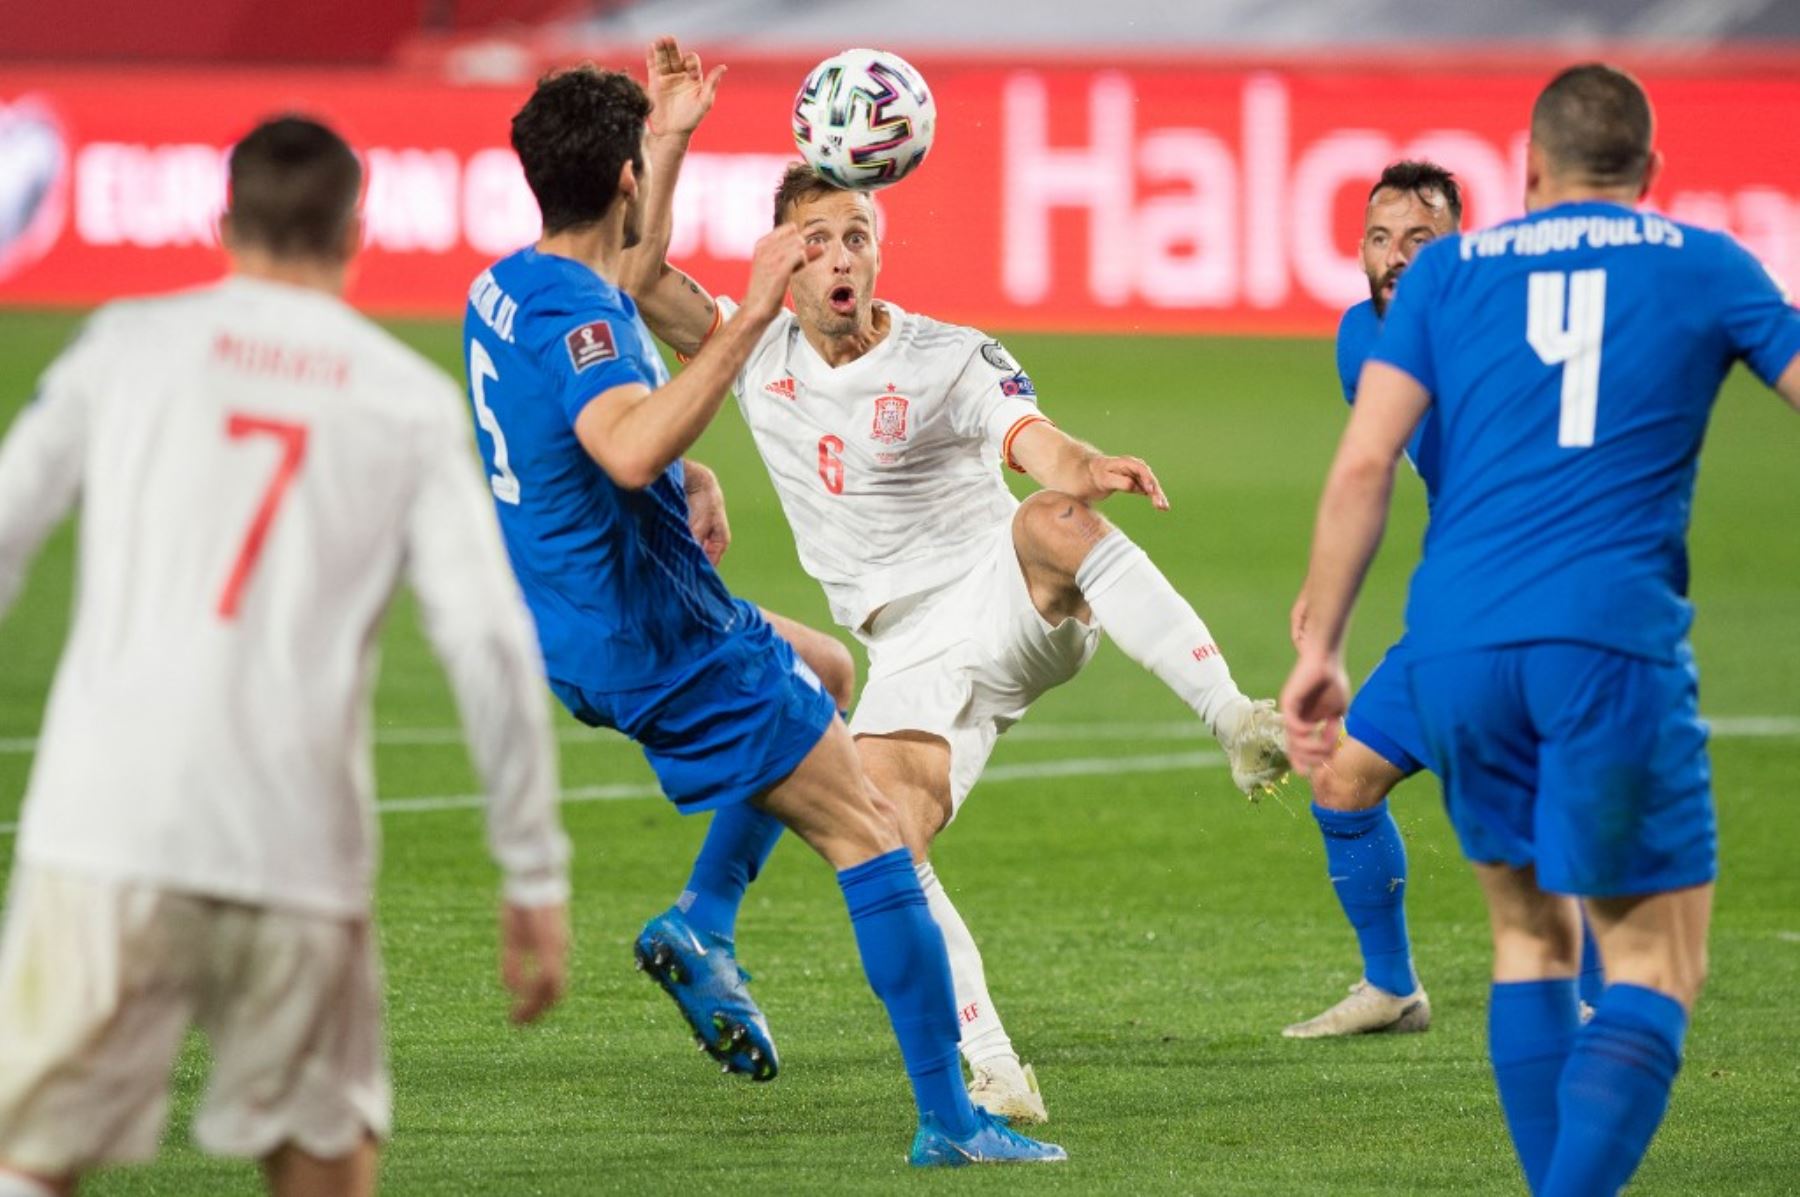 El centrocampista español Sergio Canales mira el balón durante el partido de fútbol de clasificación para la Copa Mundial de la FIFA Qatar 2022 entre España y Grecia en el estadio Los Carmenes de Granada. Foto: AFP